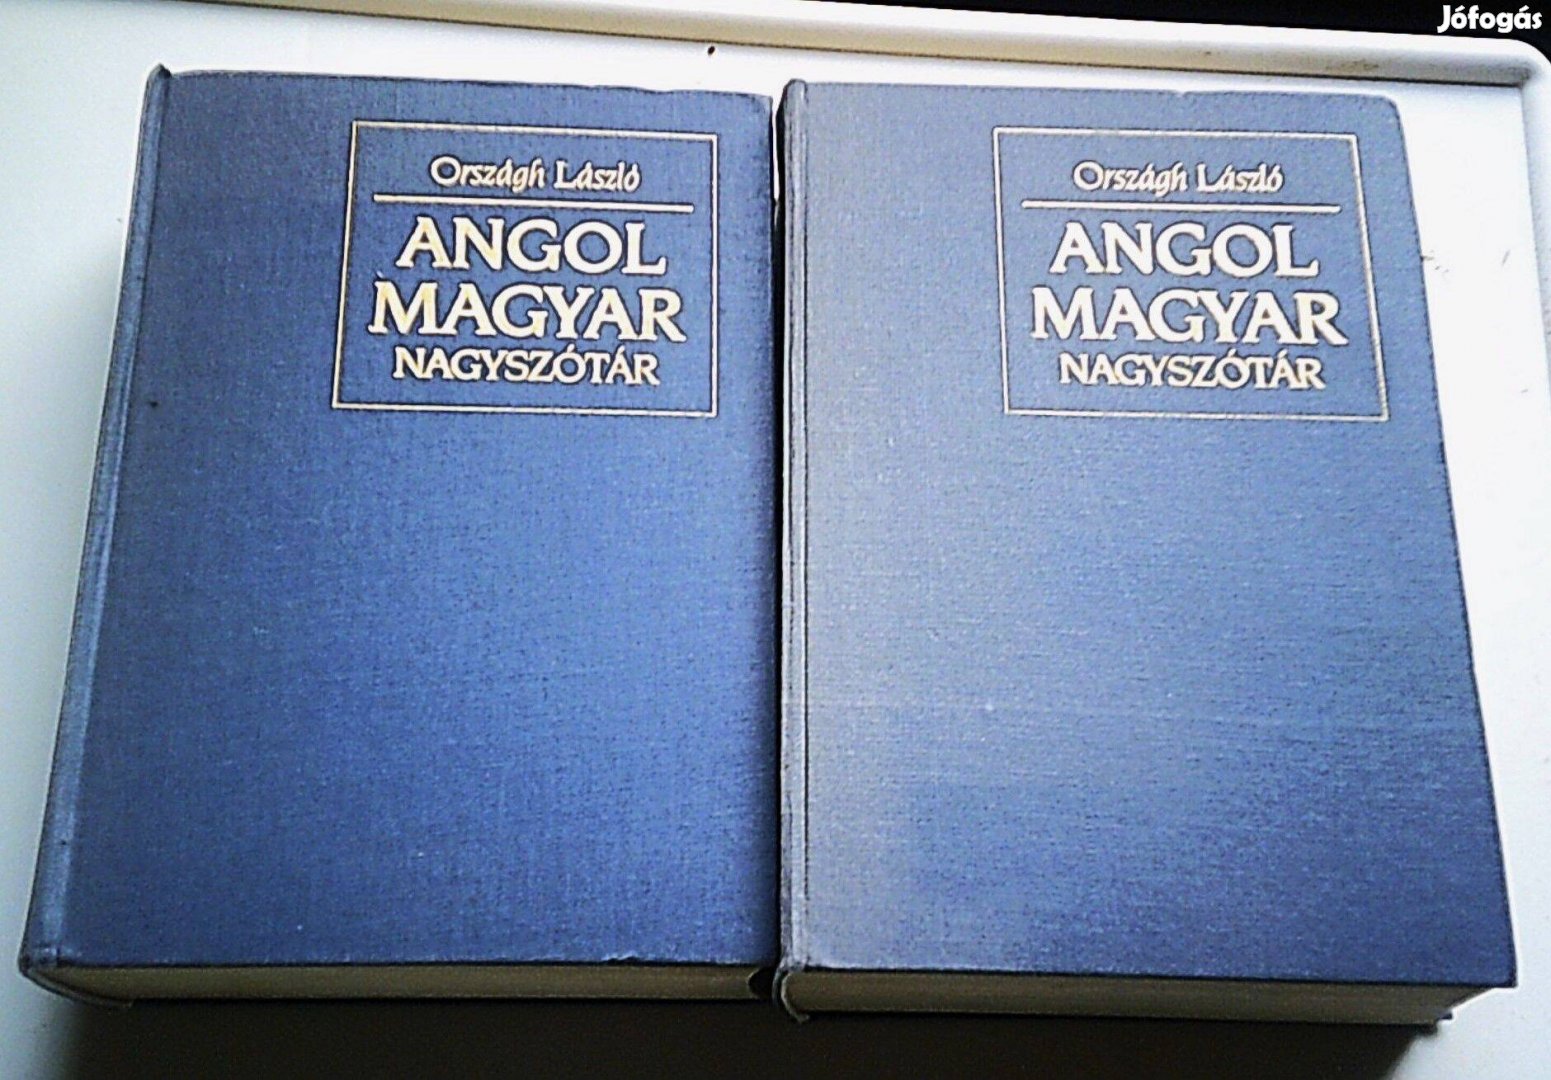 Angol magyar akadémiai nagyszótár I-II. (Országh László, l990)